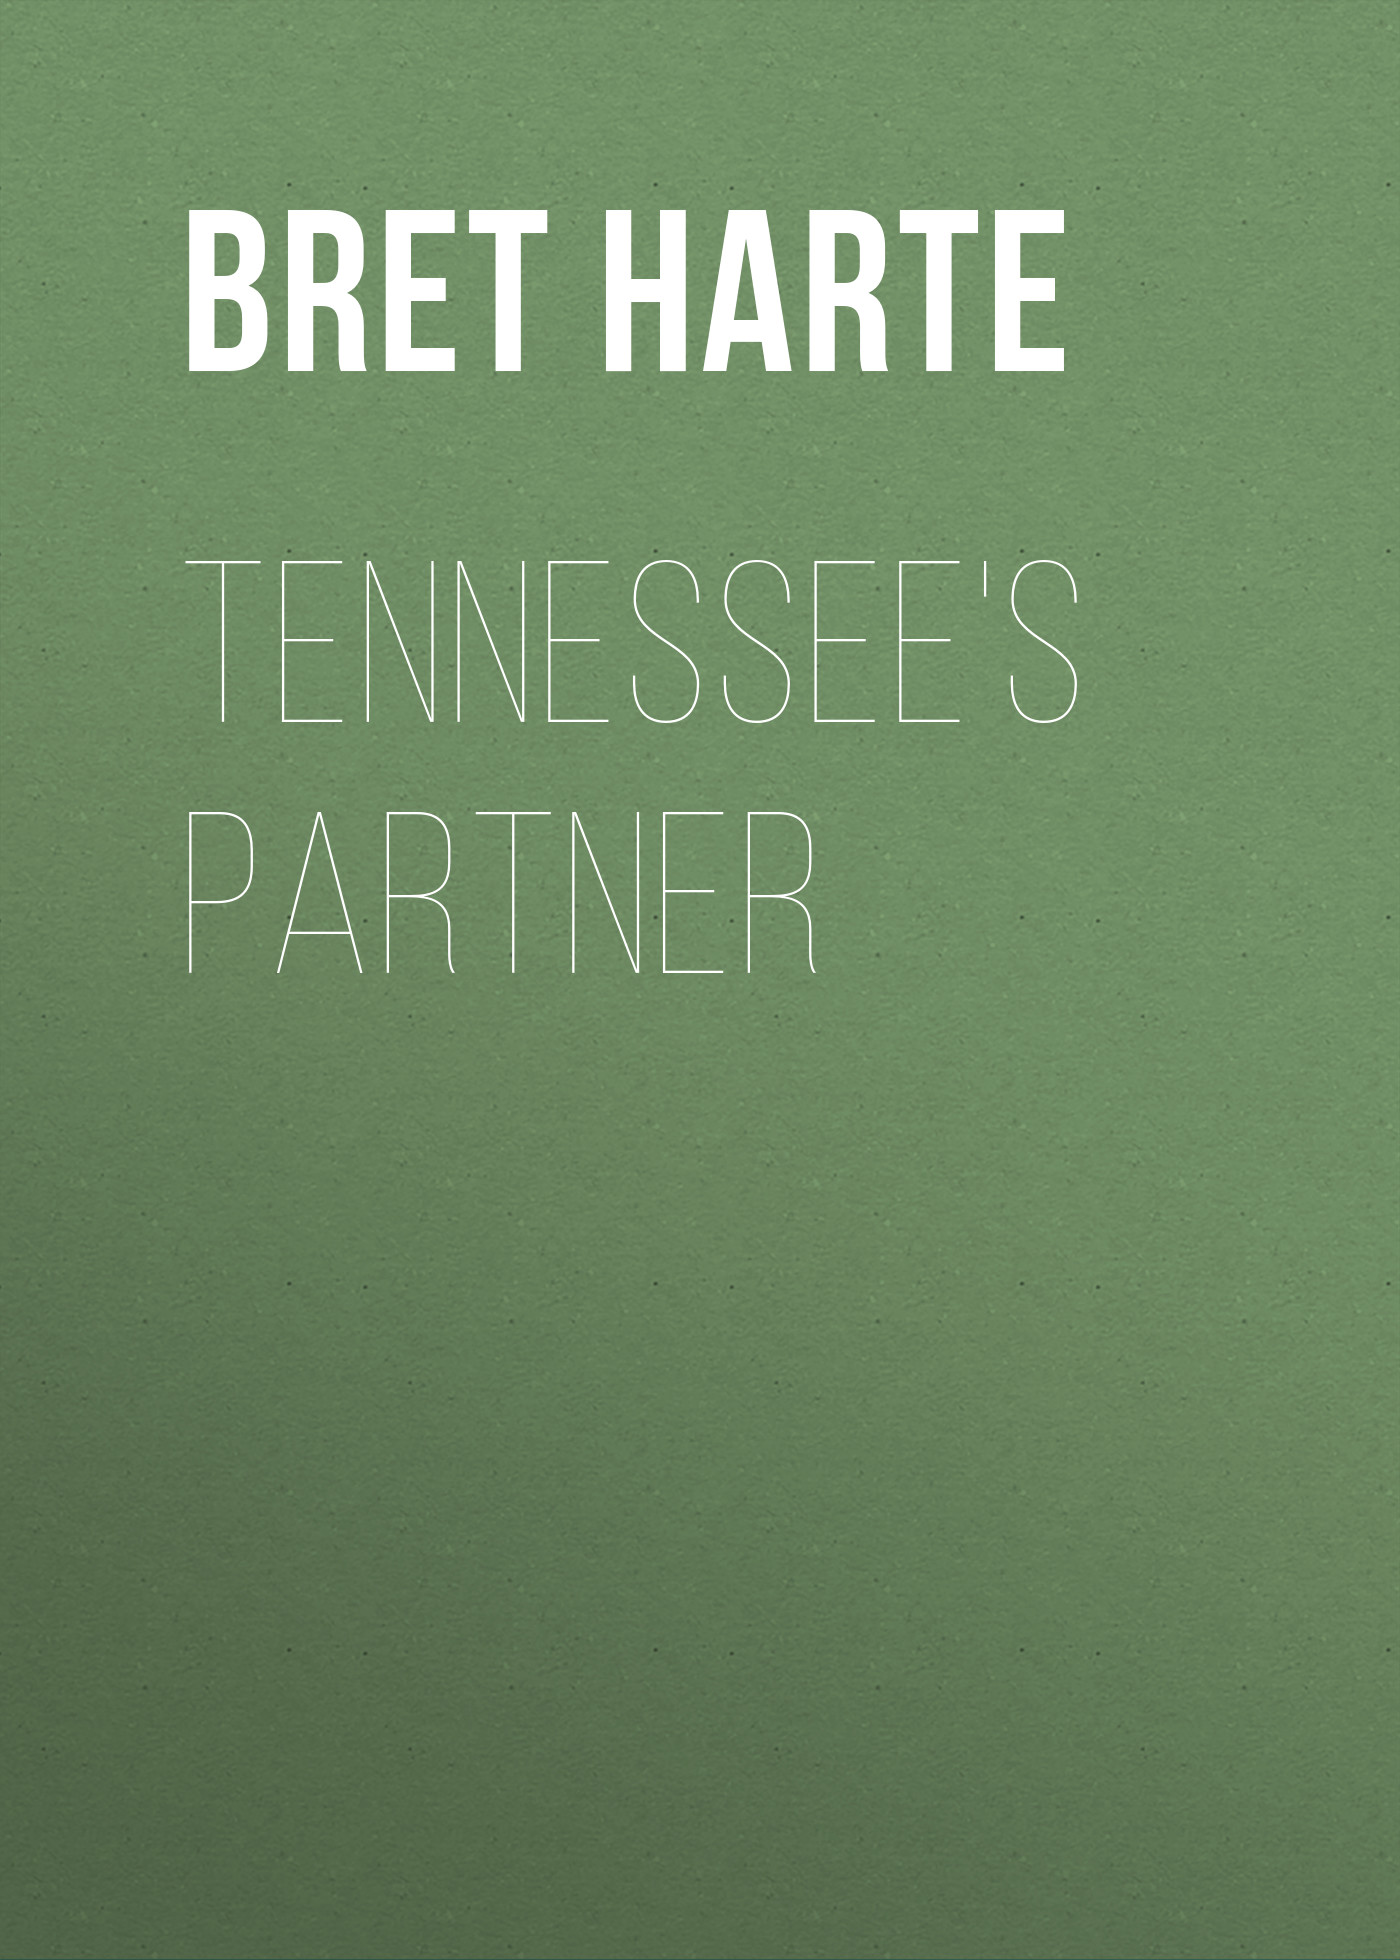 Bret Harte Tennessee's Partner